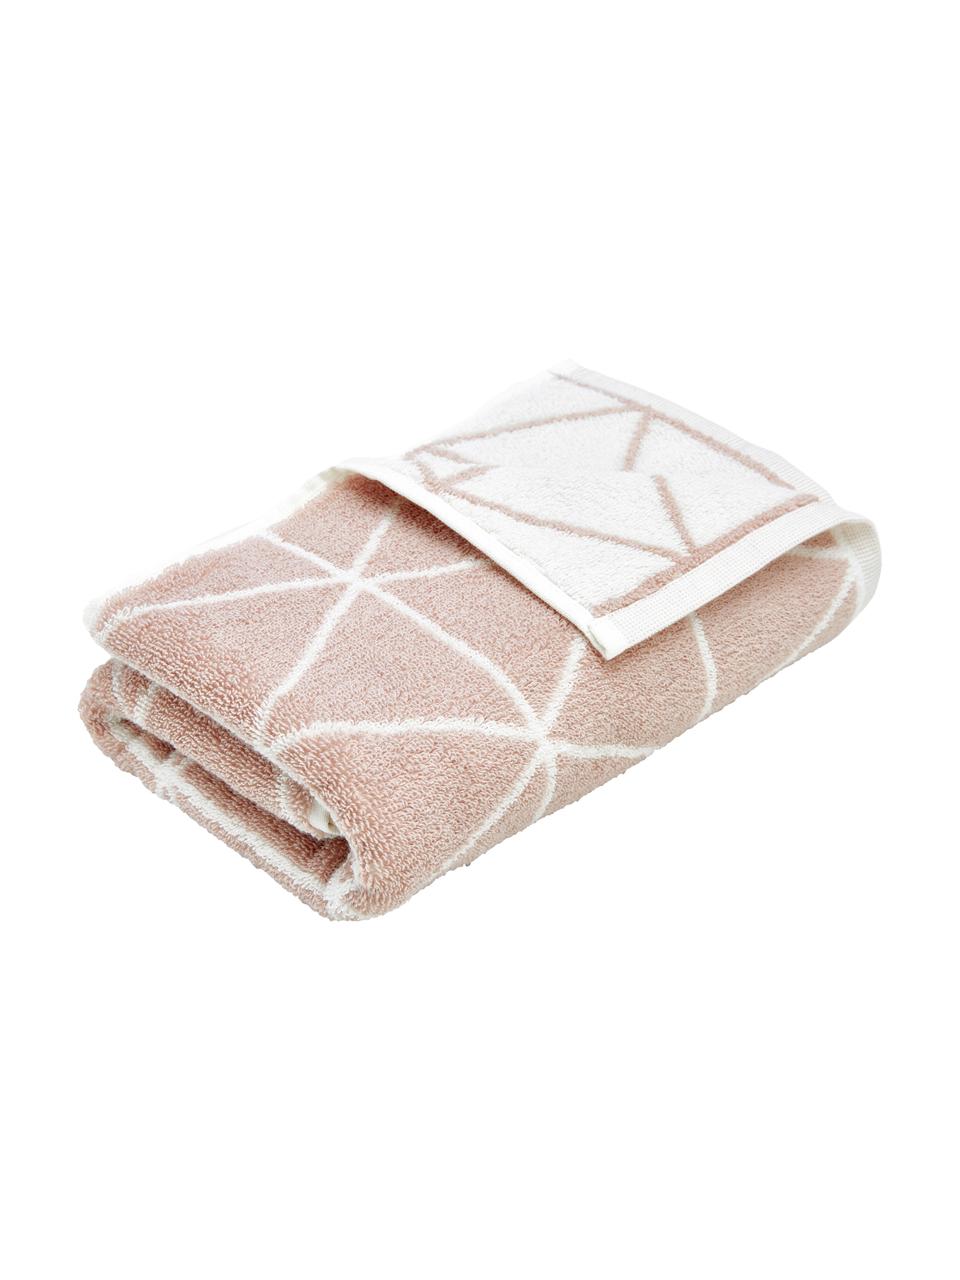 Dubbelzijdige handdoek Elina met grafisch patroon, 2 stuks, Roze, crèmewit, Handdoek, B 50 x L 100 cm, 2 stuks